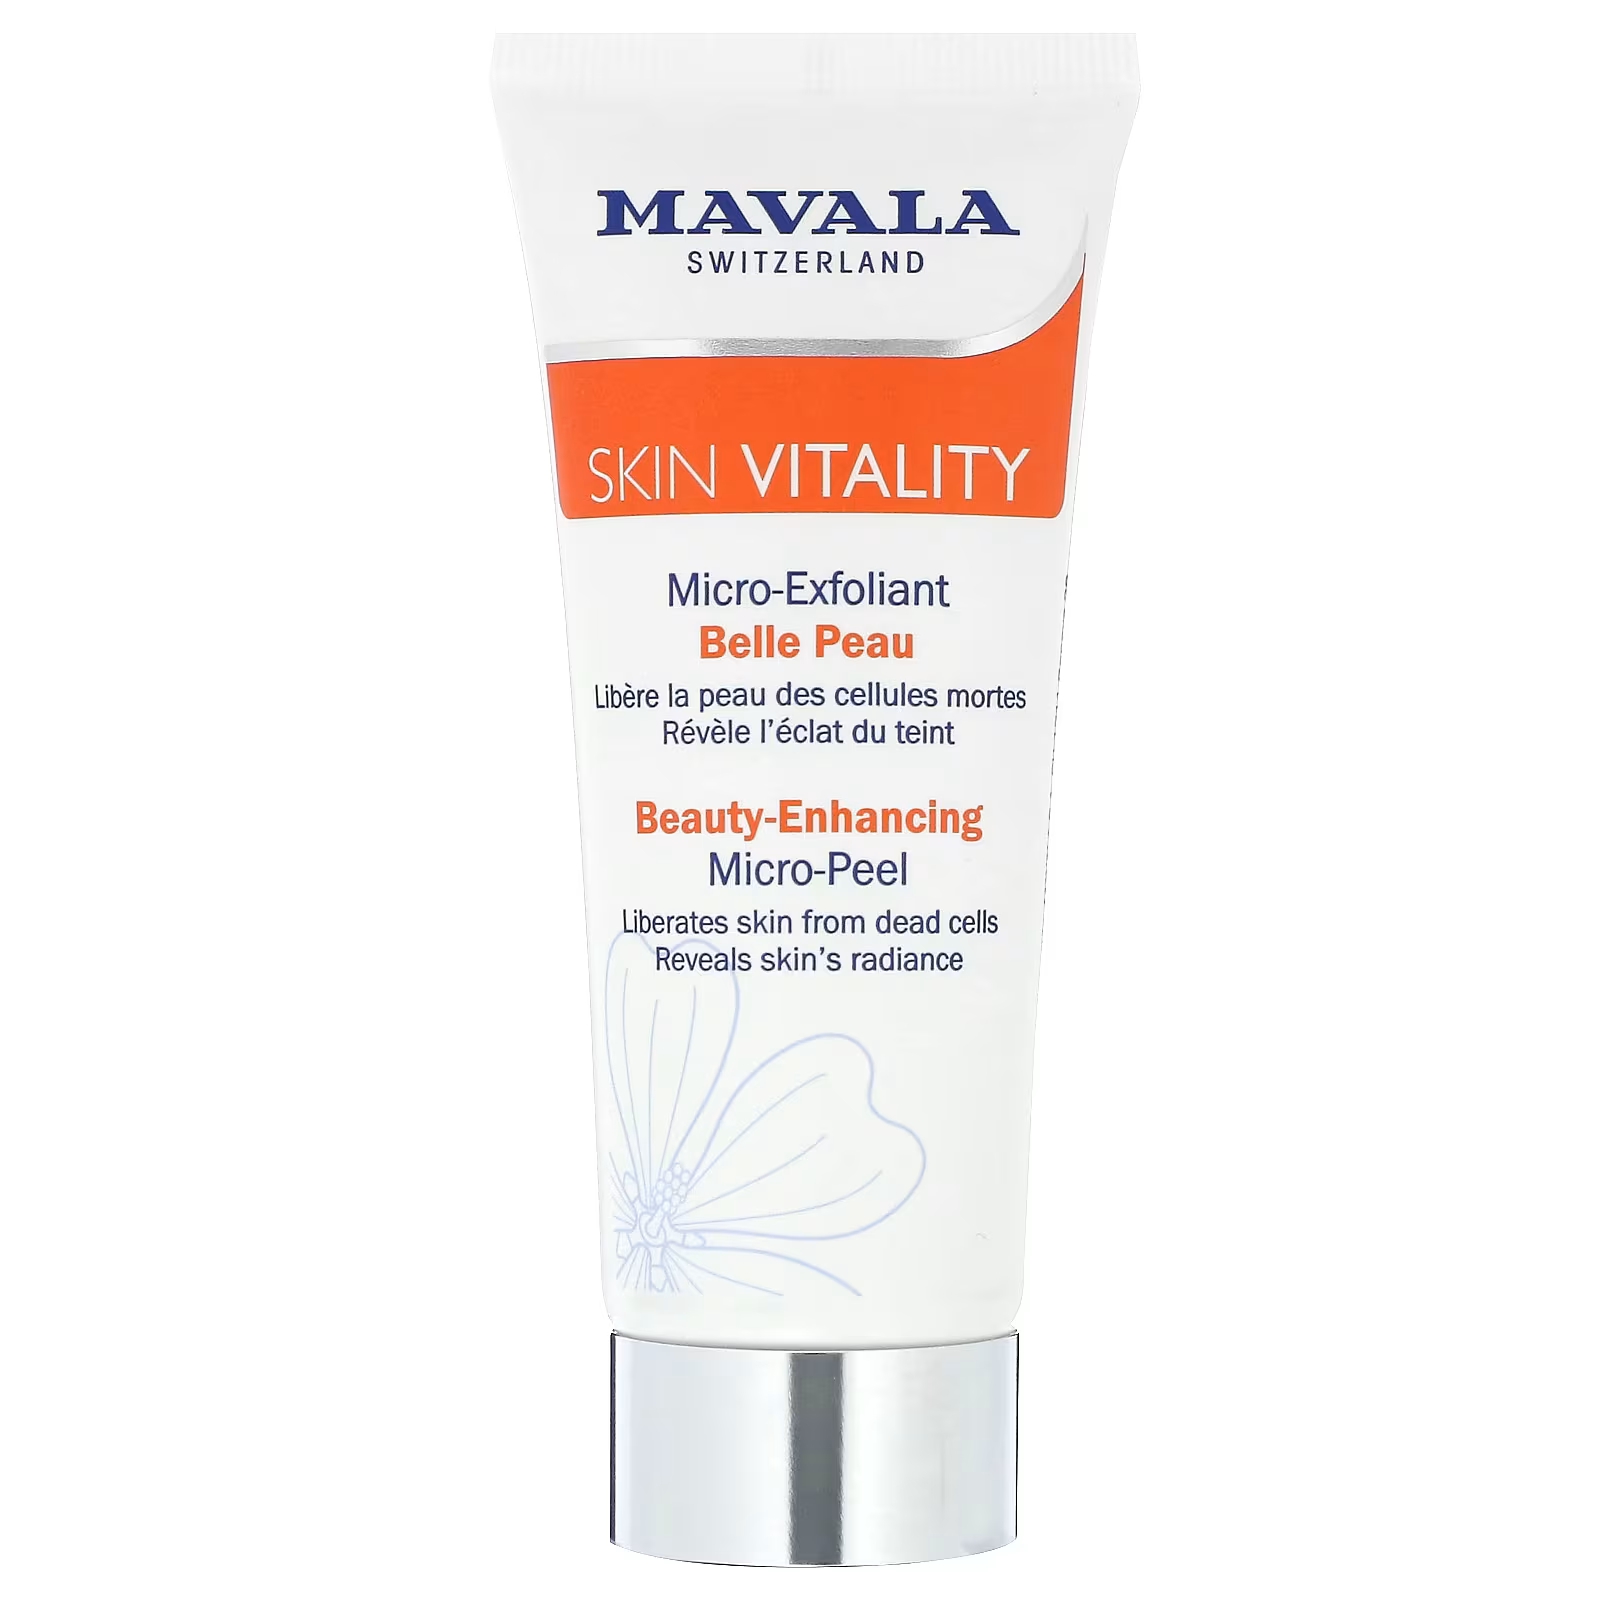 Микро-скраб Mavala Skin Vitality Beauty-Enhancing Micro-Peel, 65 мл mavala микро мист альпийский стимулирующий skin vitality 125 мл